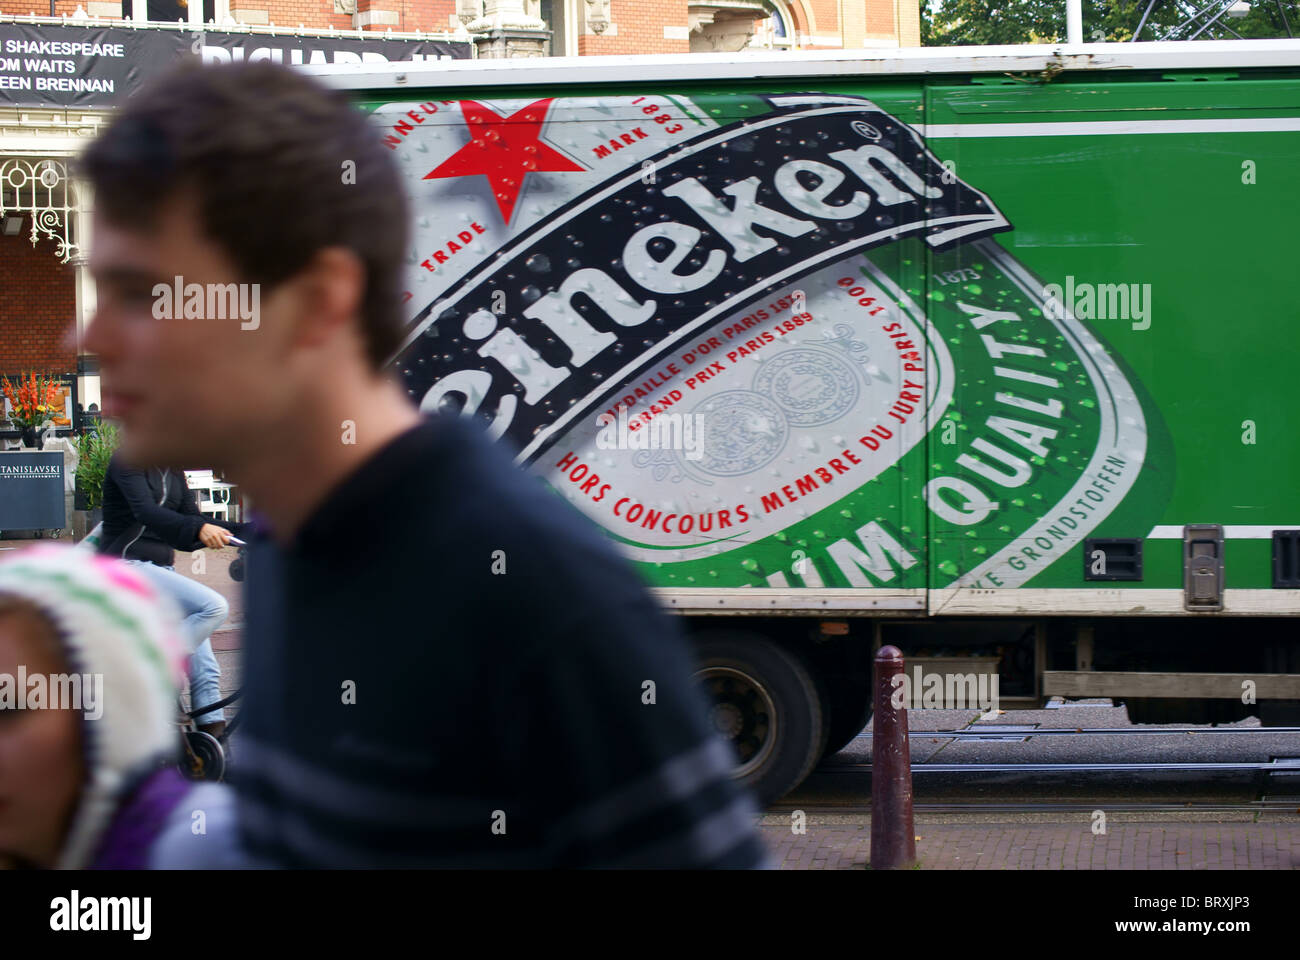 Heineken beer, transport, in Amsterdam, The Netherlands Stock Photo